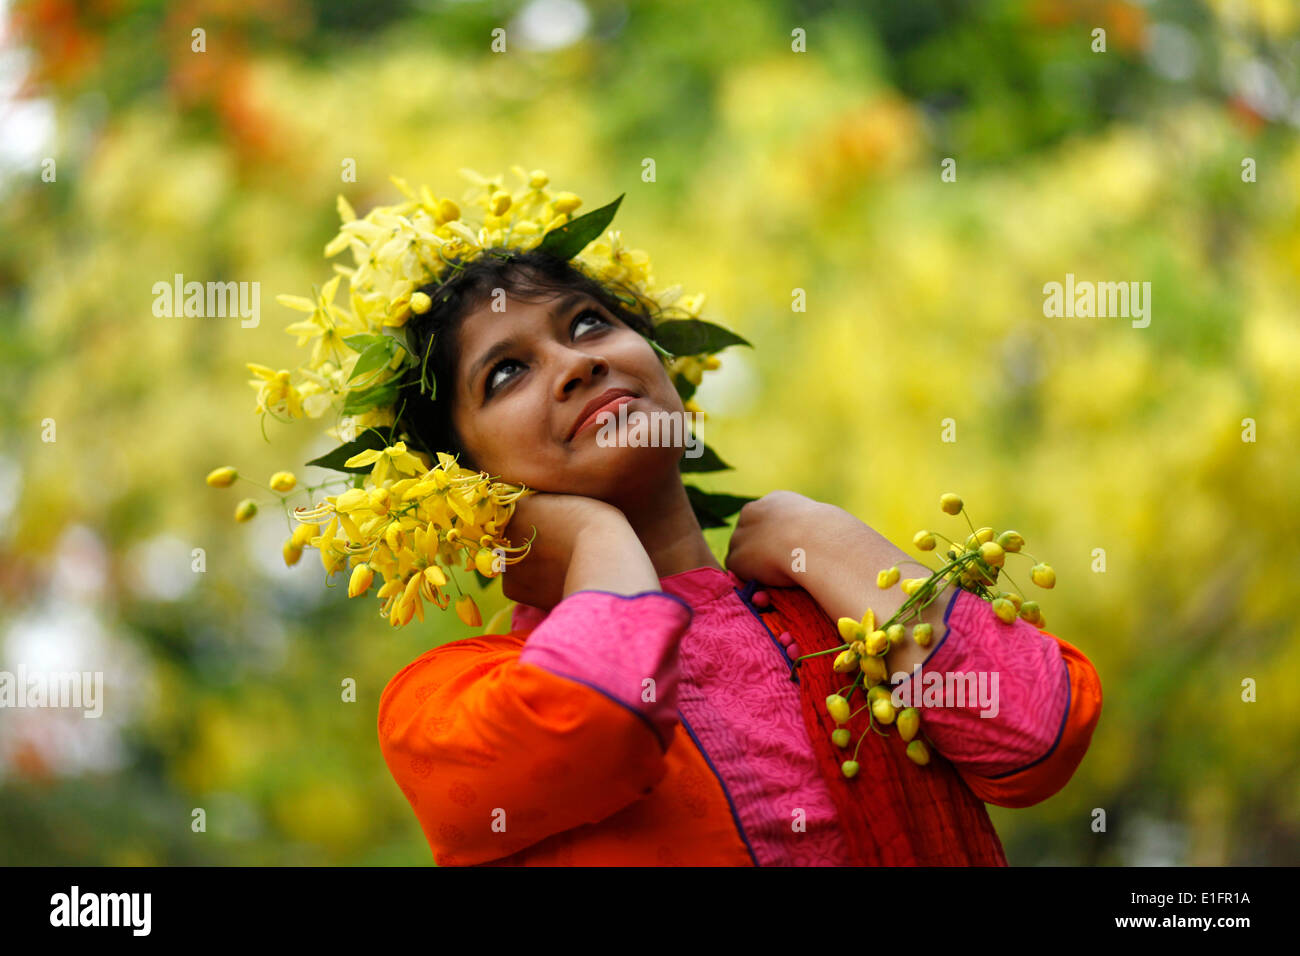 Dhaka, Bangladesh, le 05 mai 2014 ; les Bangladaises et fleurs d'été en été.Pendant la saison estivale de nombreuses sortes de fleurs bloom nommé (Krishnachura Sonalu,Delonix regia) Fleur (Cassia fistula),Moulmein, Rosewood (Millettia Peguensis),Crape Myrtle Tropicaux (Lagerstroemia Trubinata) etc. Banque D'Images